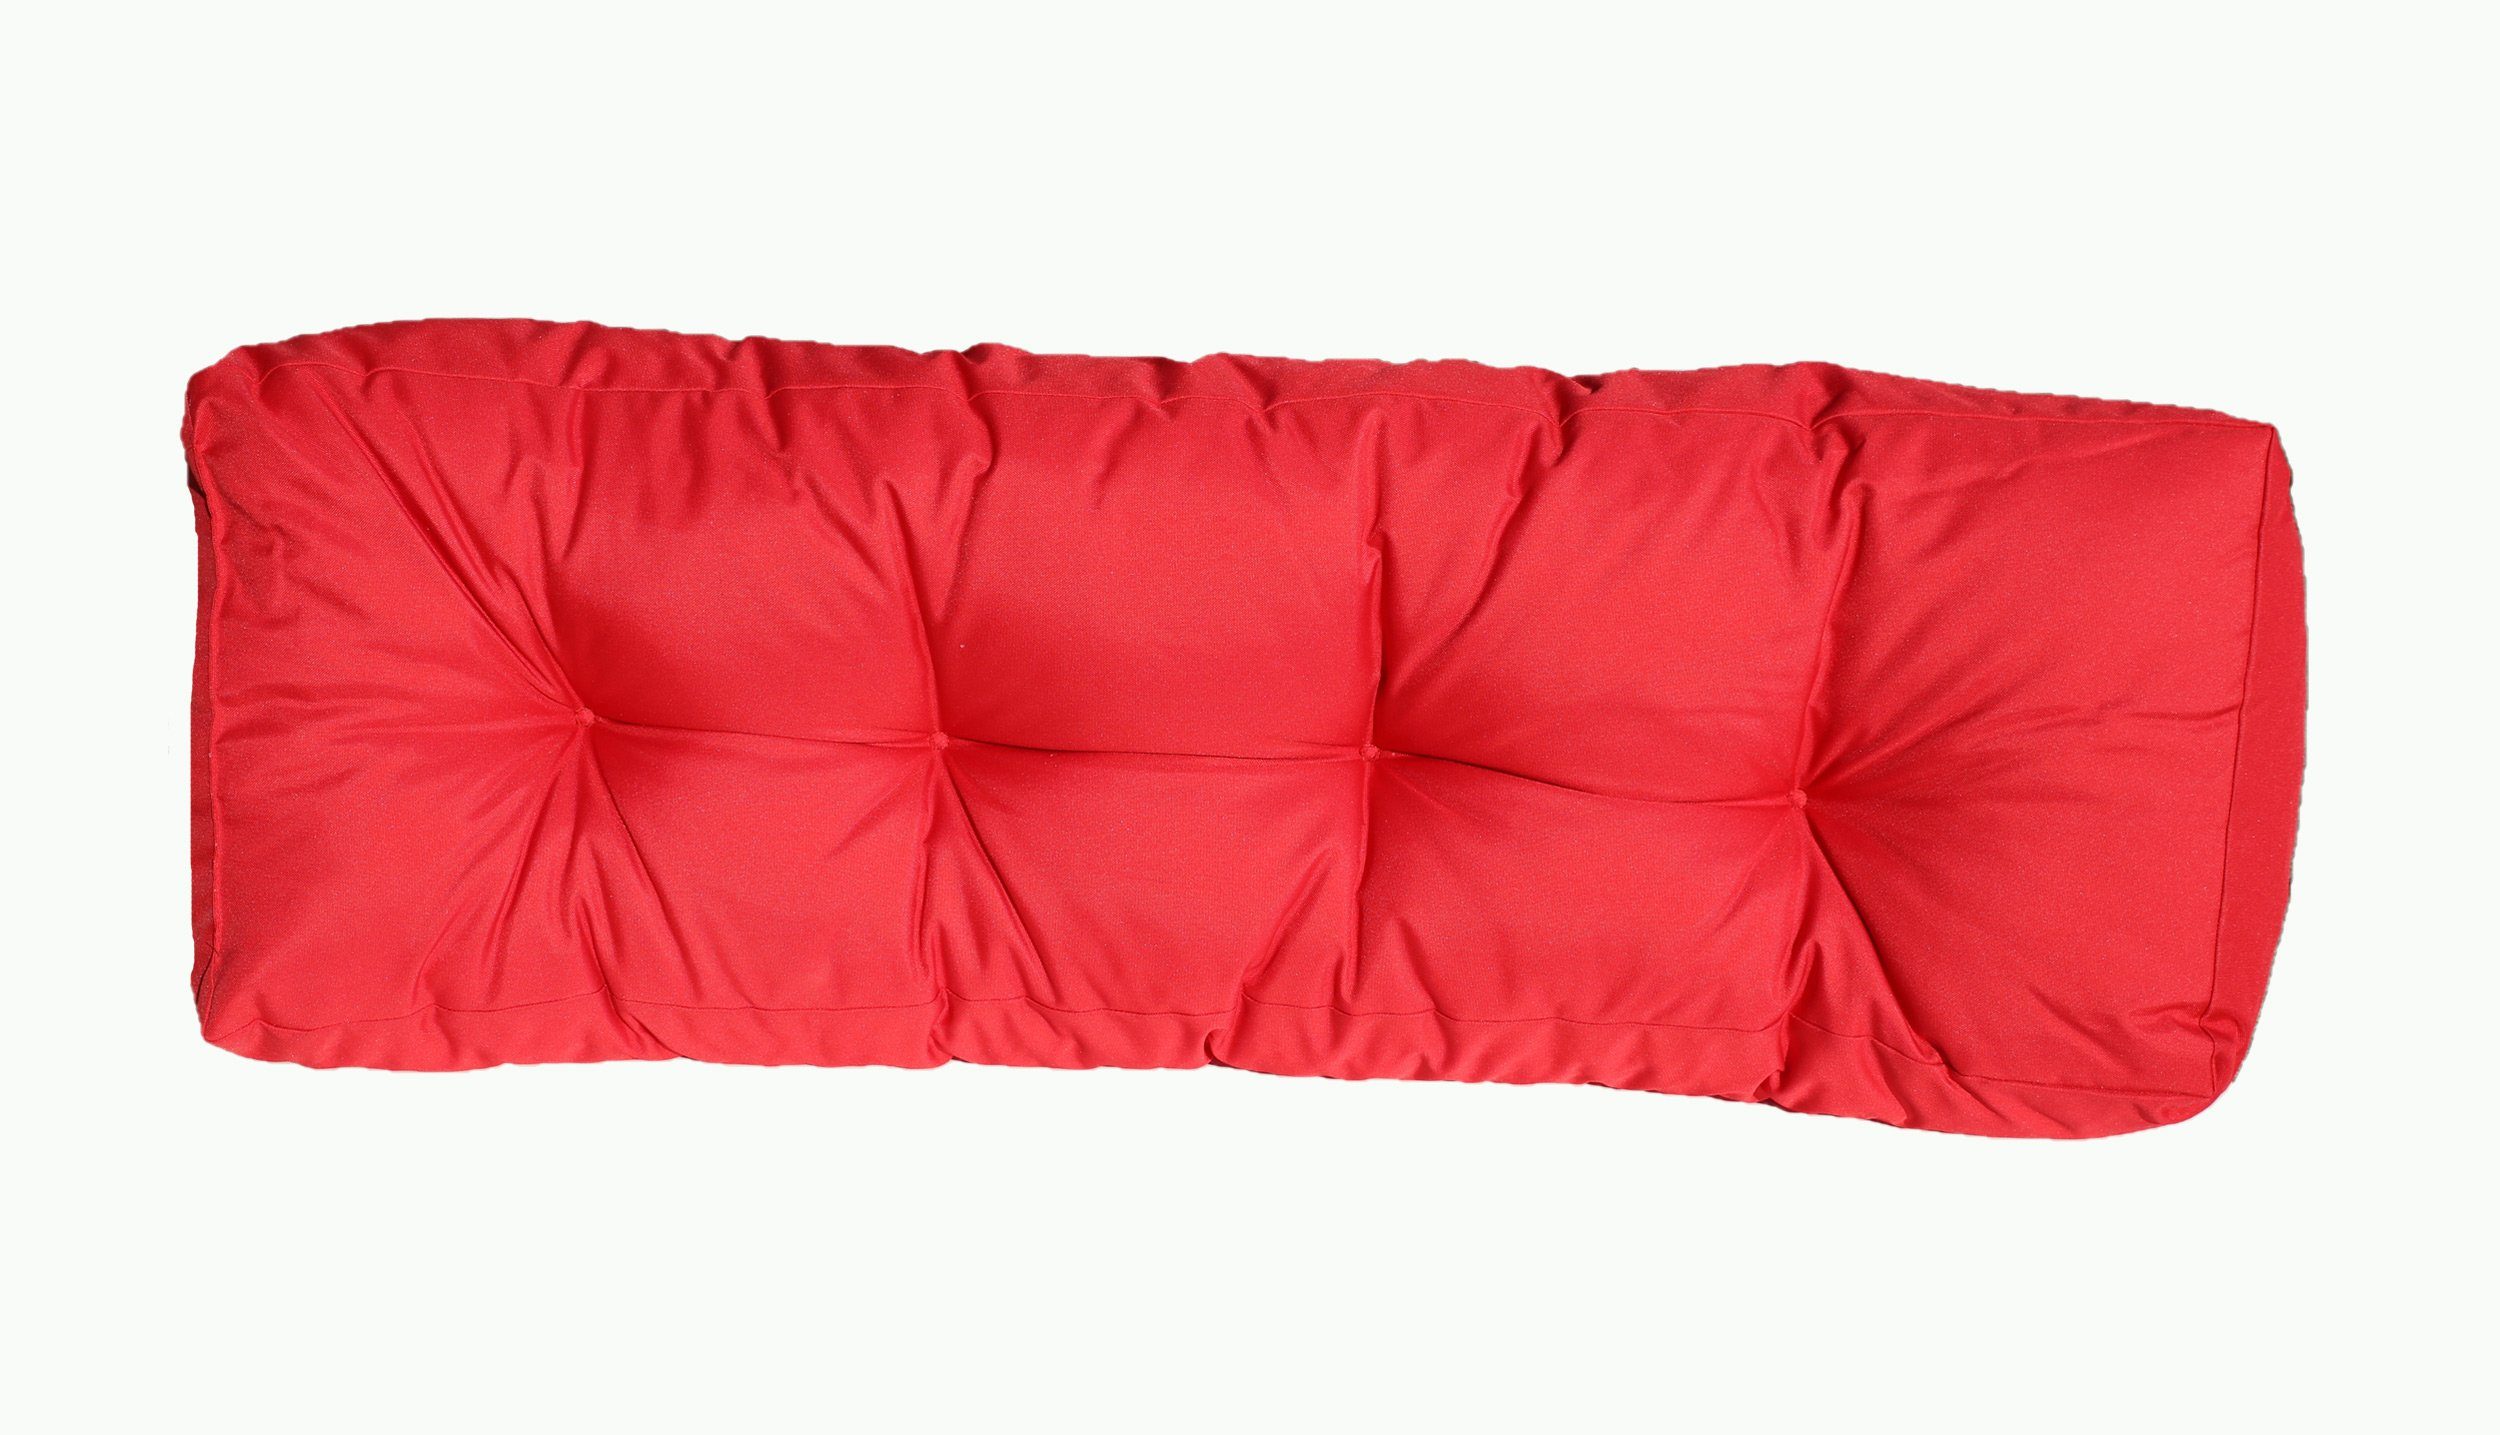 Haus und Deko Sitzkissen Palettensitzkissen Set 120x80 cm und 120x40 cm Outdoor Rückenkissen Rot